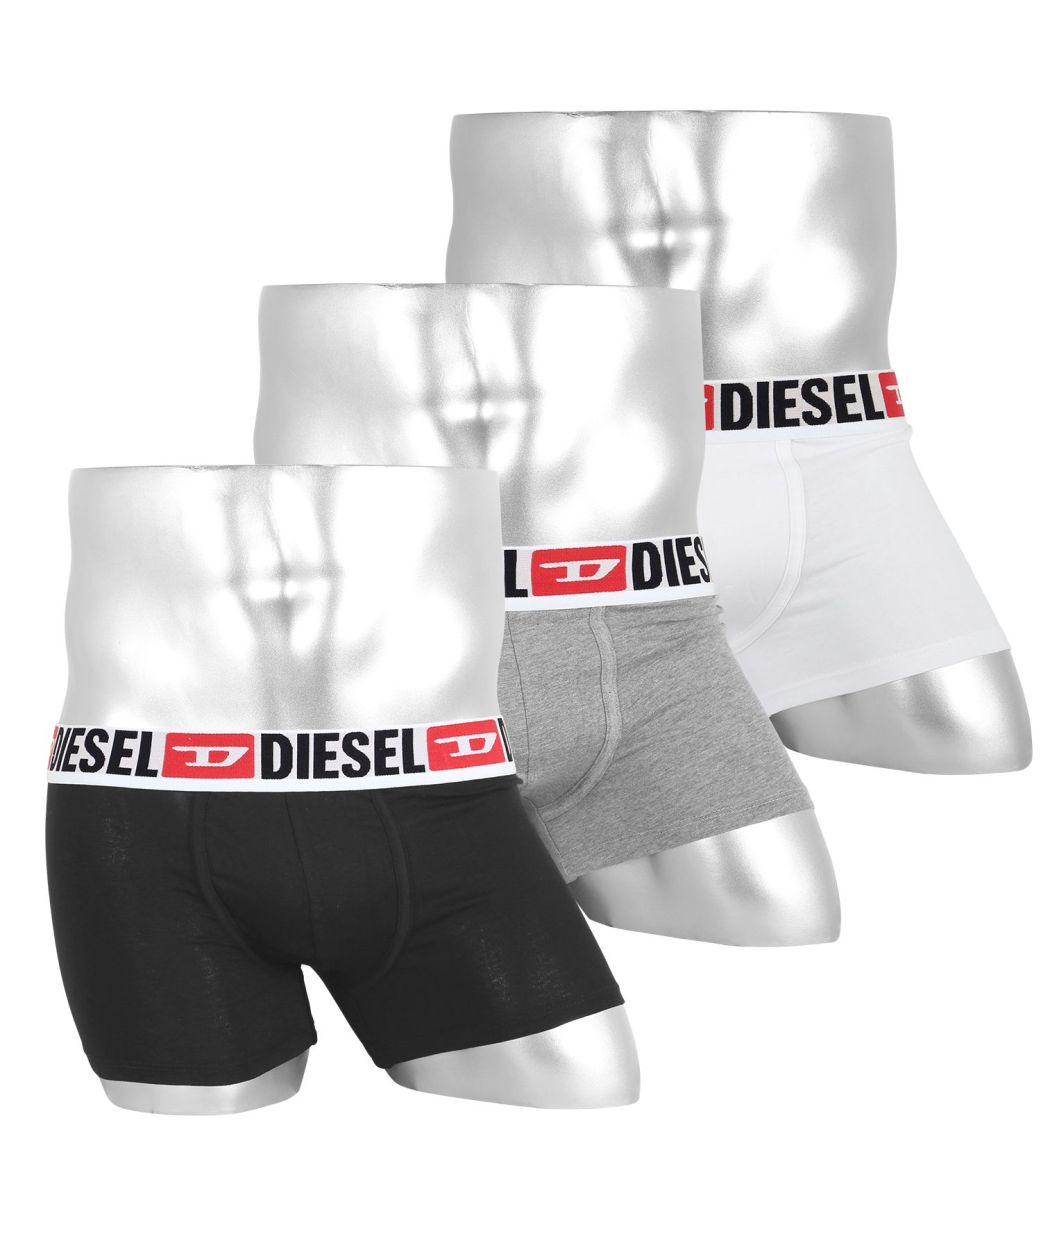 ディーゼル DIESEL ボクサーパンツ 3枚セット メンズ アンダーウェア 男性 下着 綿混 コットン ブランド ロゴ プレゼント ギフト